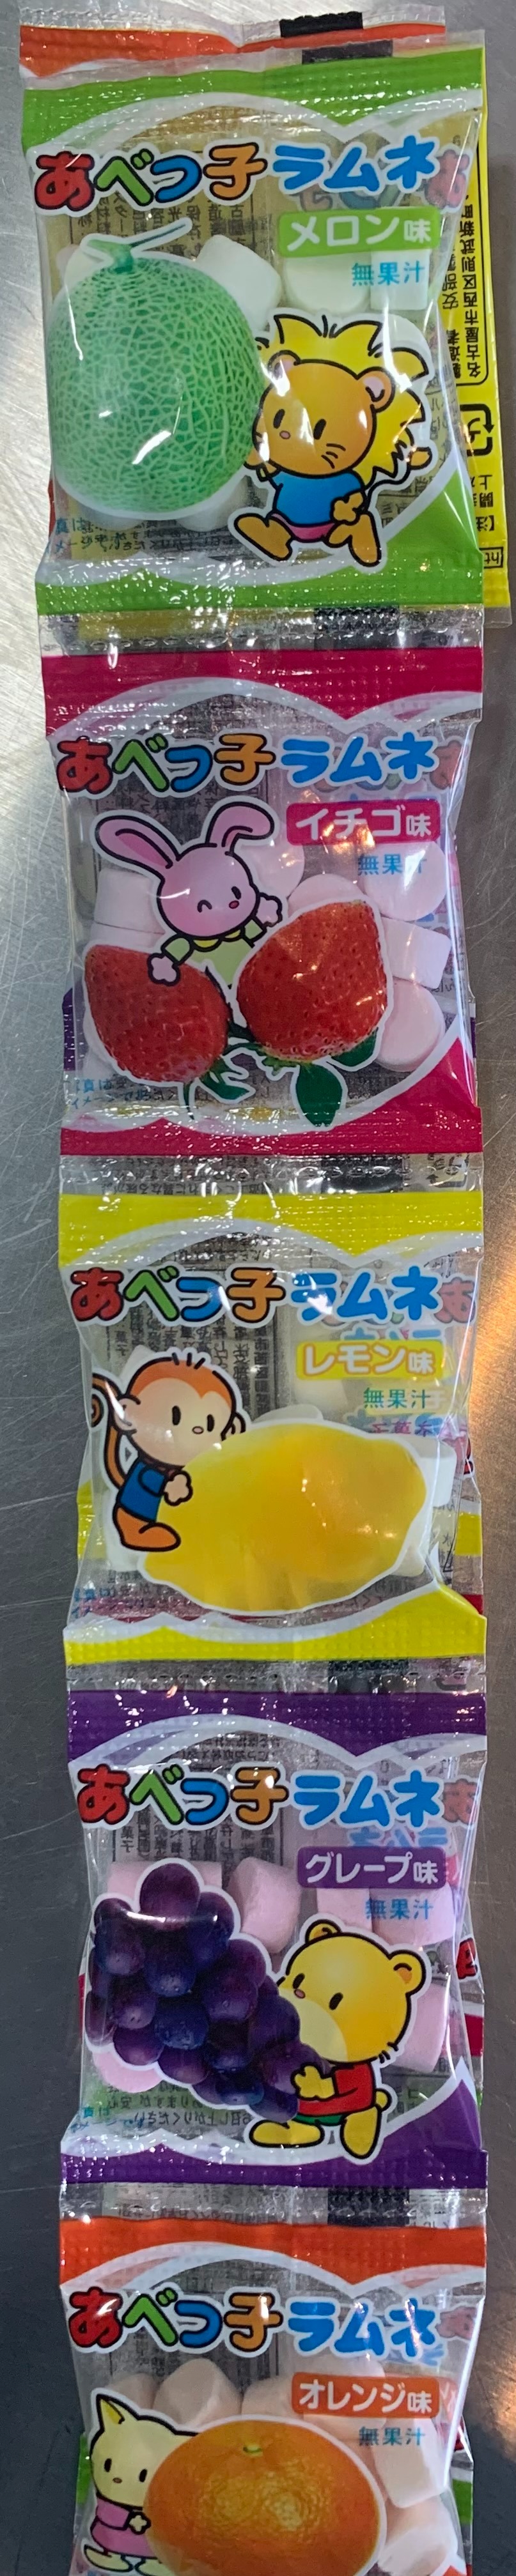 Japanese Dagashi Candy